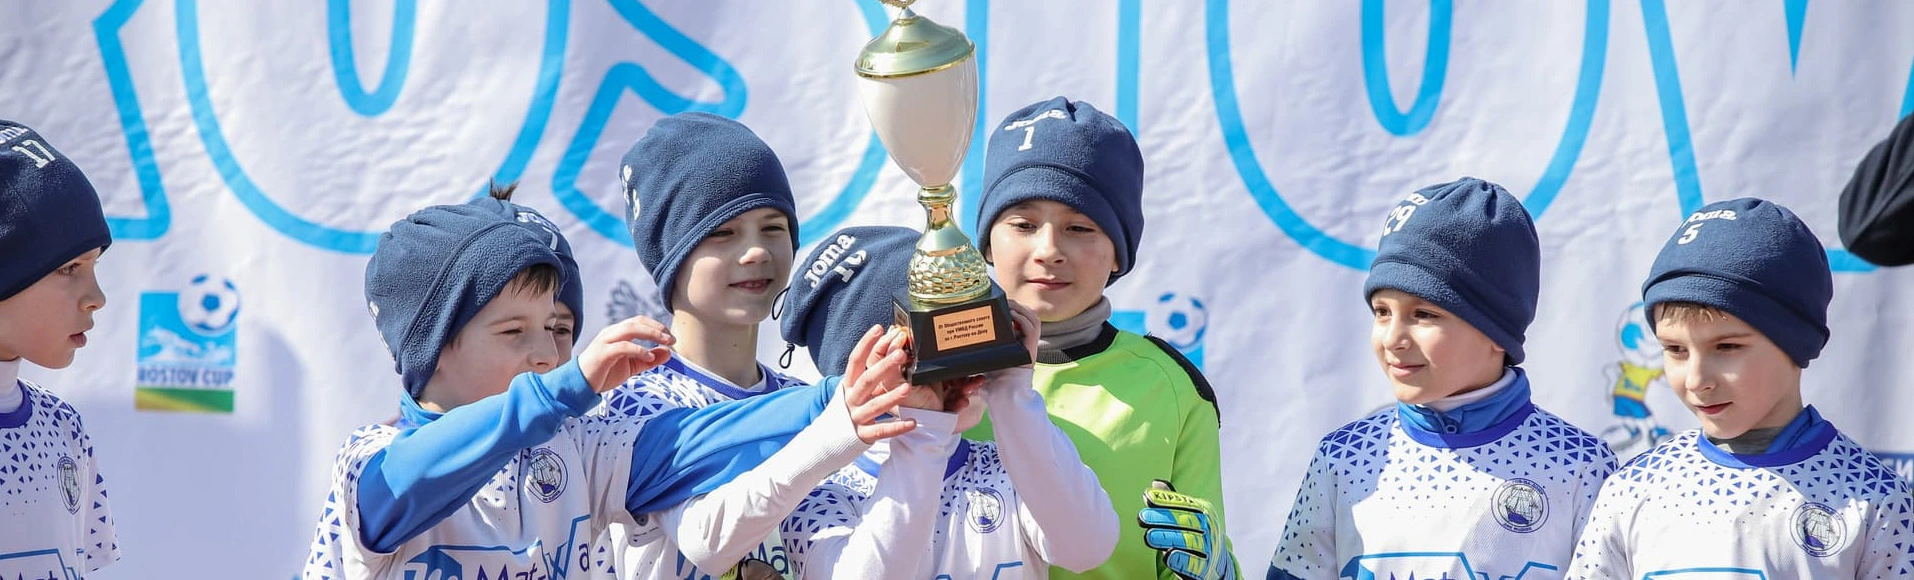 Детский футбольный фестиваль в Ростове-на-Дону